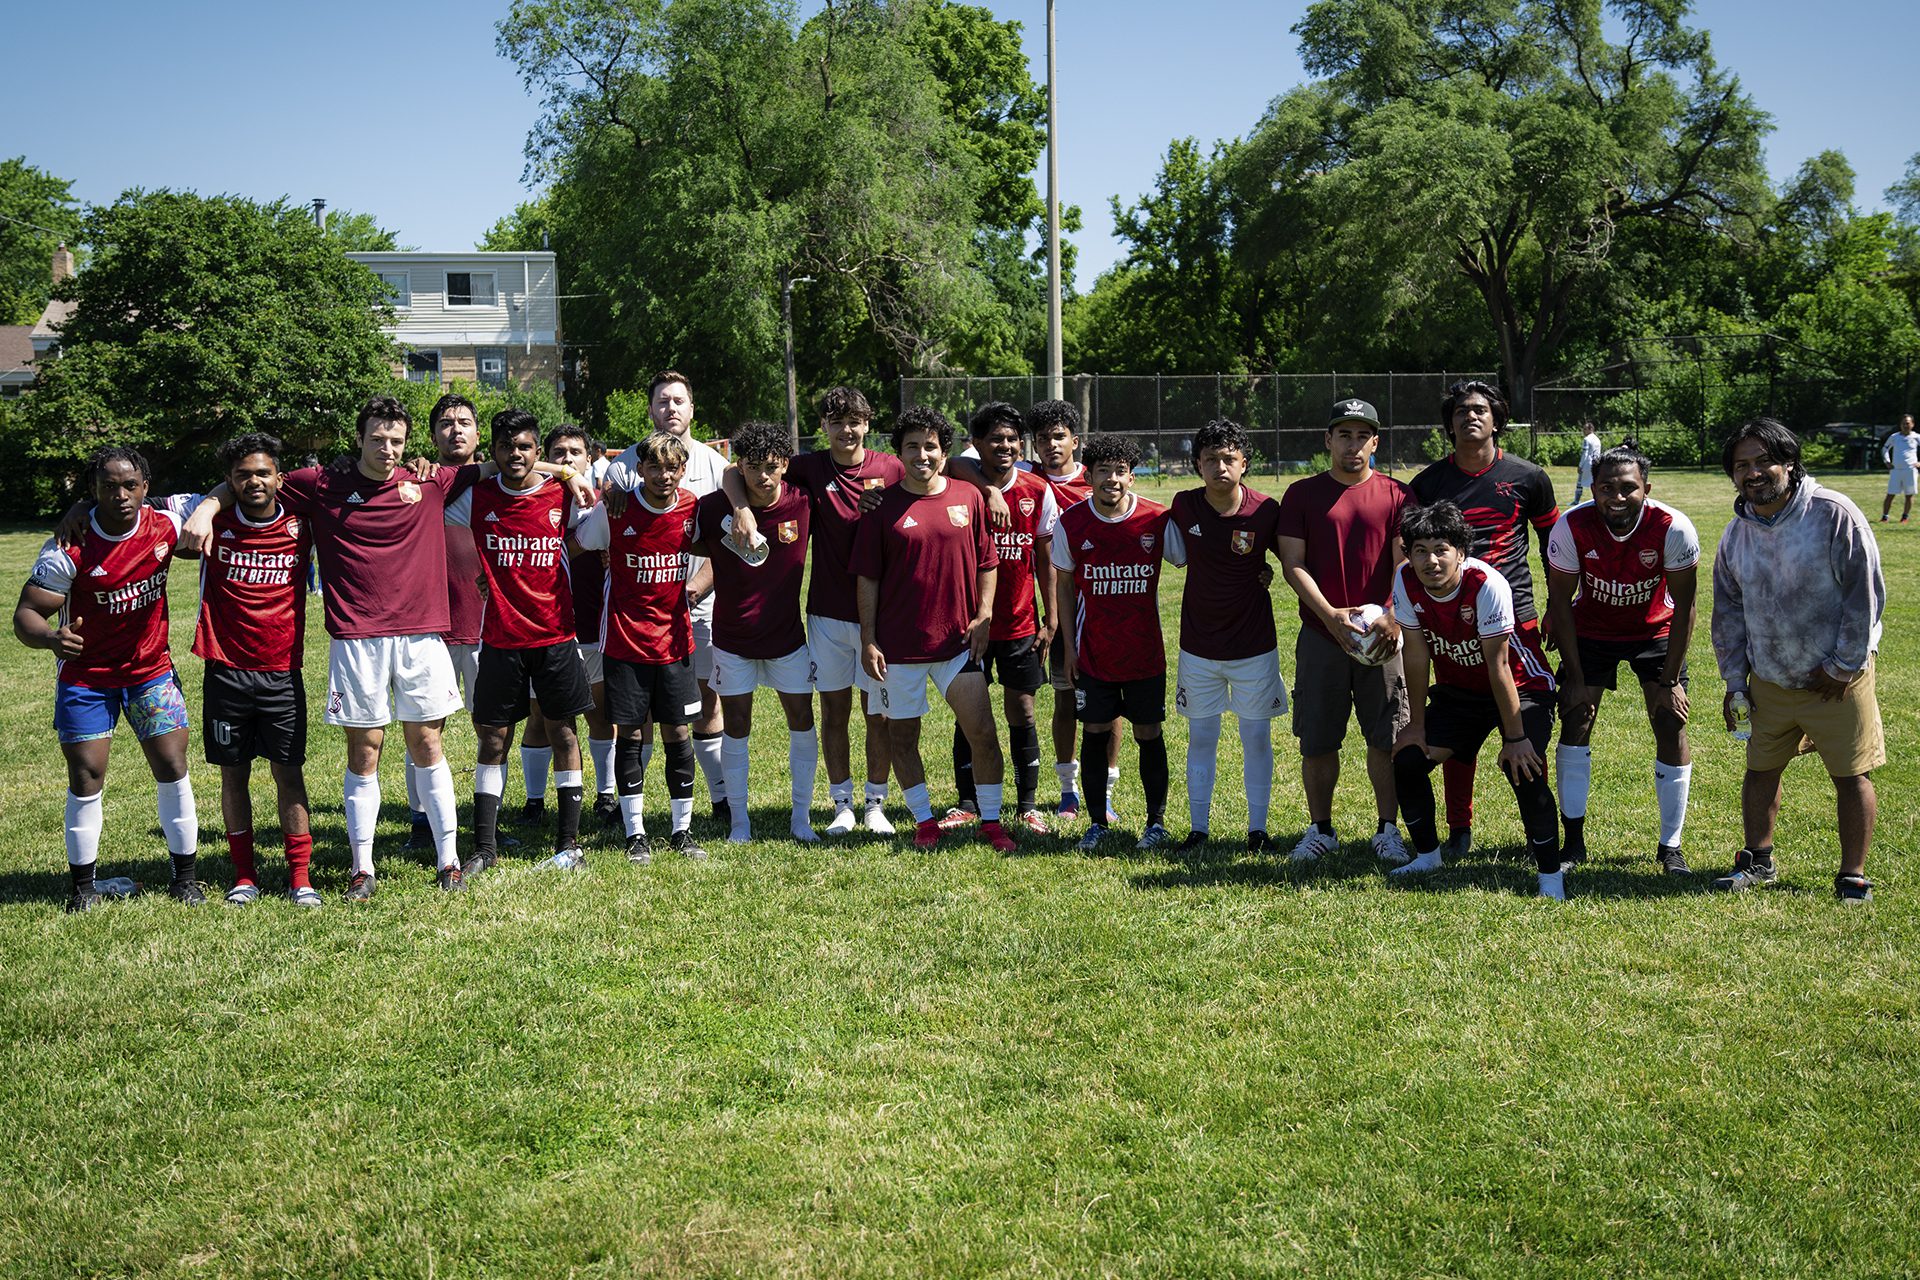 grupo de jugadores de fútbol en un campo; la mayoría llevan camisetas rojas